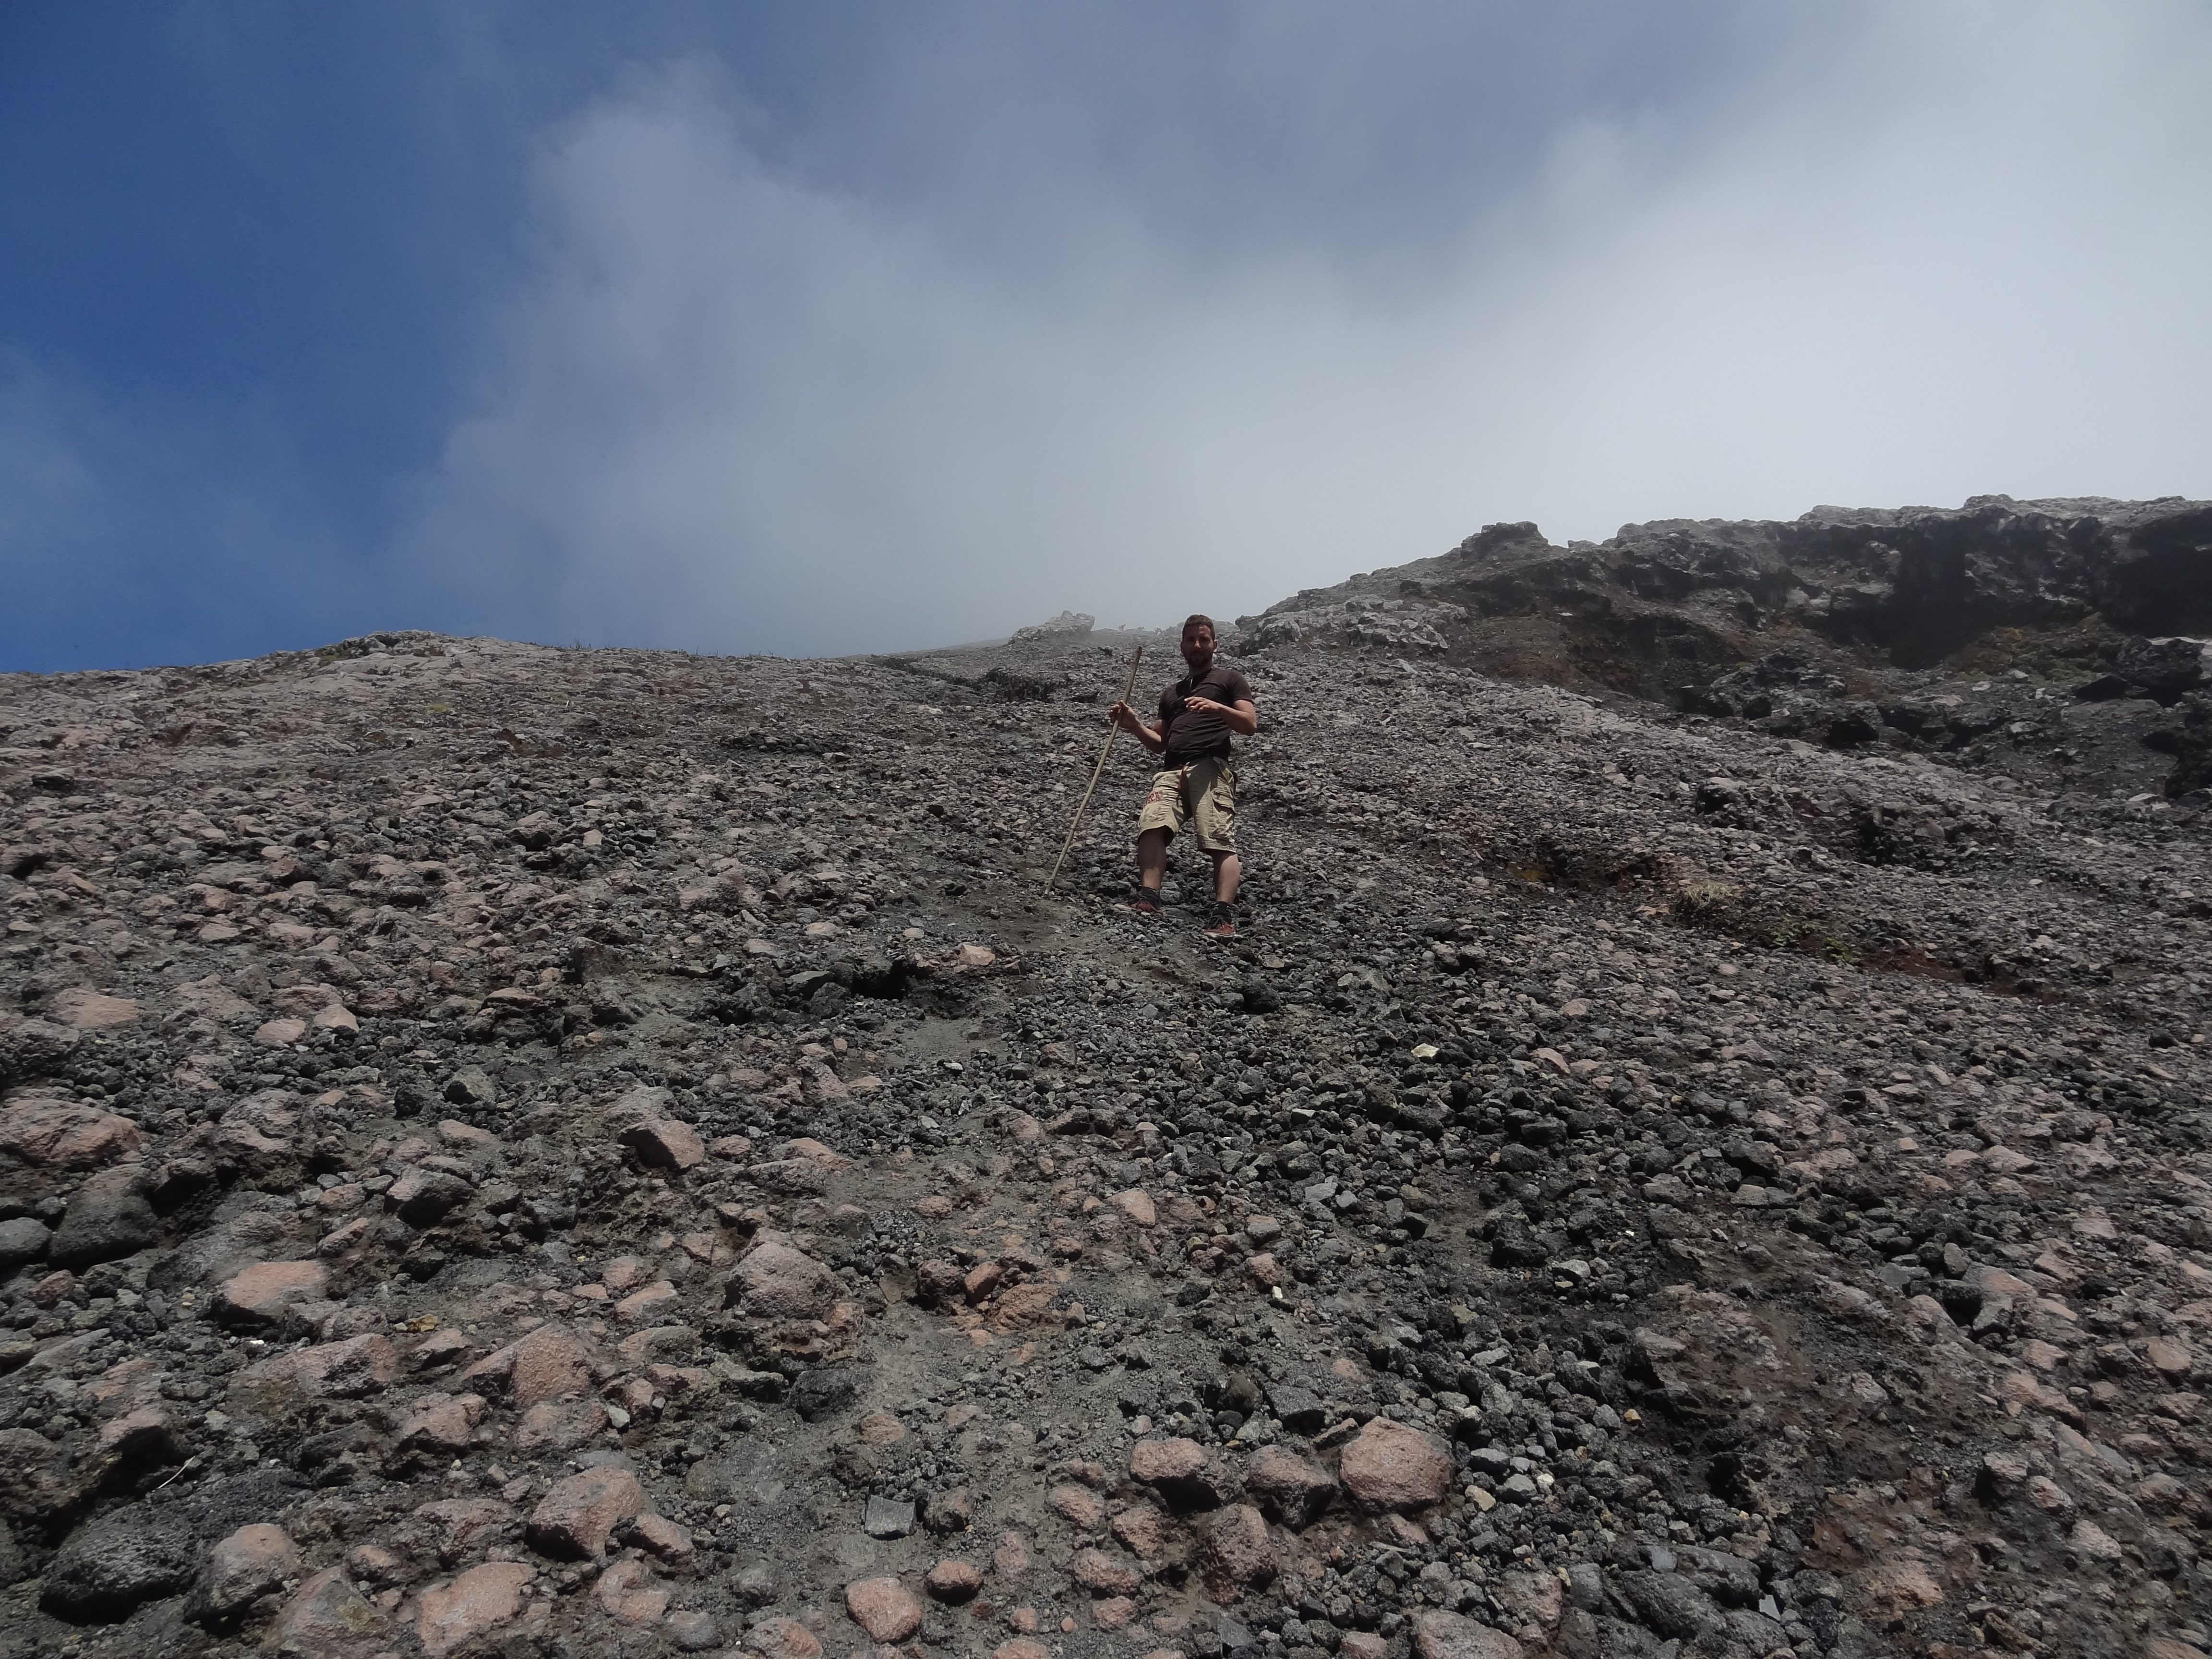 La descente du Volcan Concepcion sur l'Ile Ometepe au NIcaragua est juste horrible! Photo blog voyage tour du monde travel https://yoytourdumonde.fr